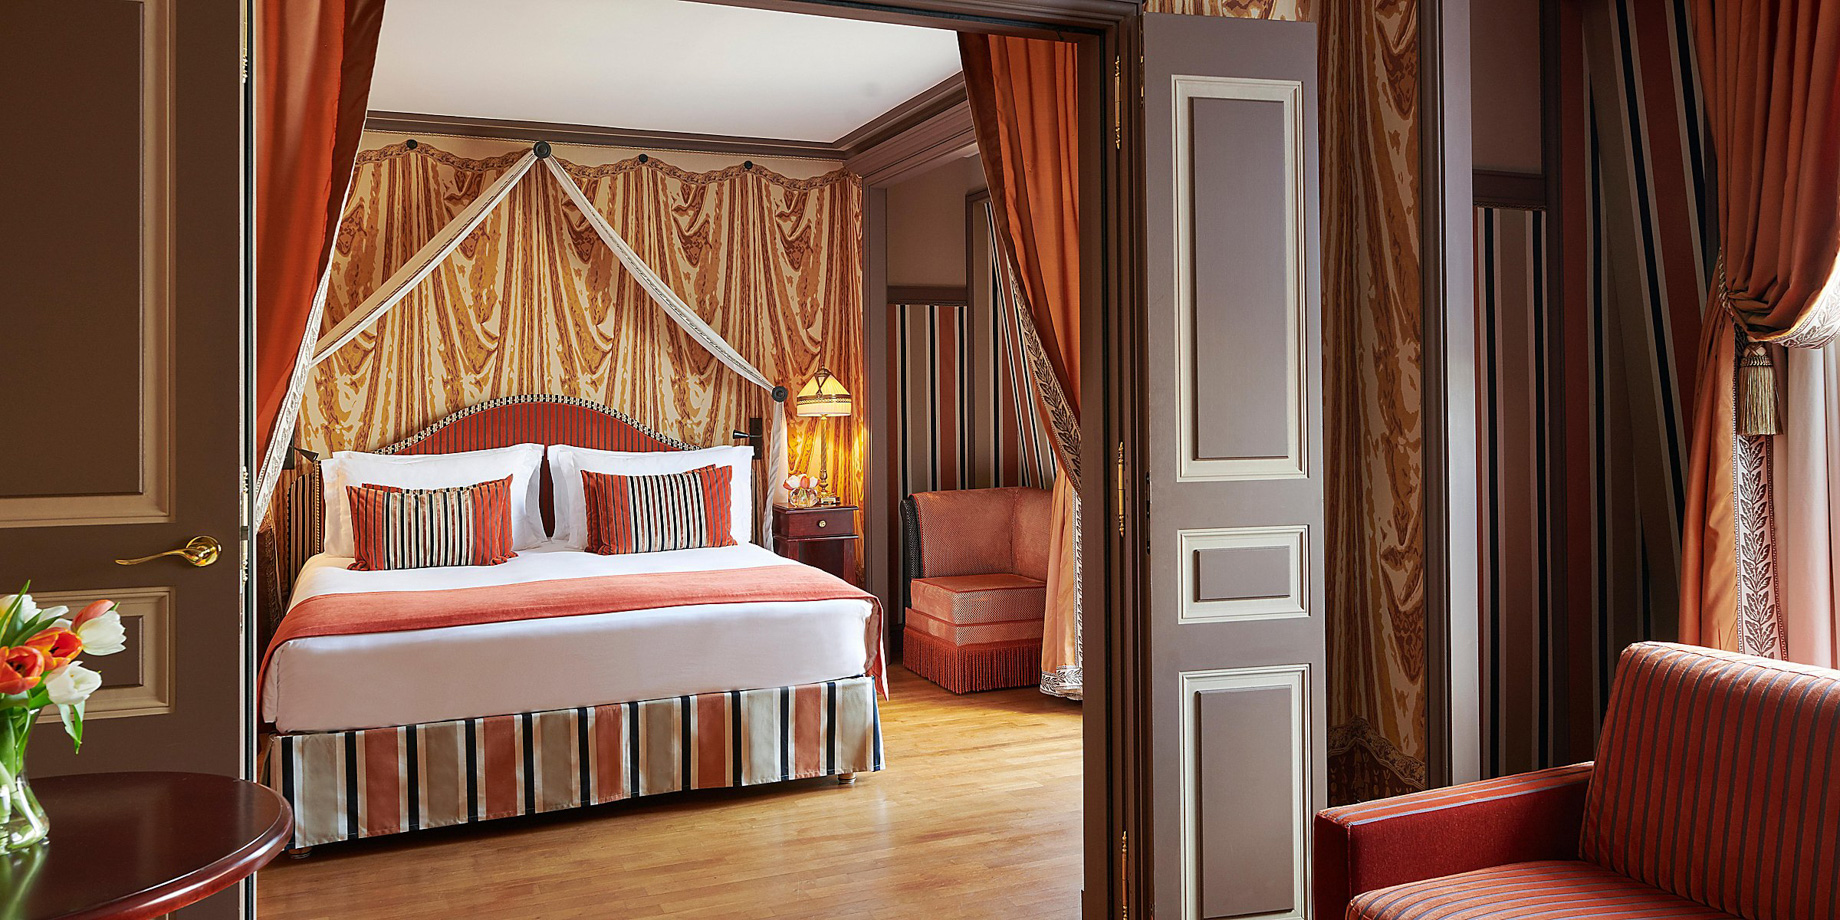 InterContinental Bordeaux Le Grand Hotel – Bordeaux, France – Guest Room